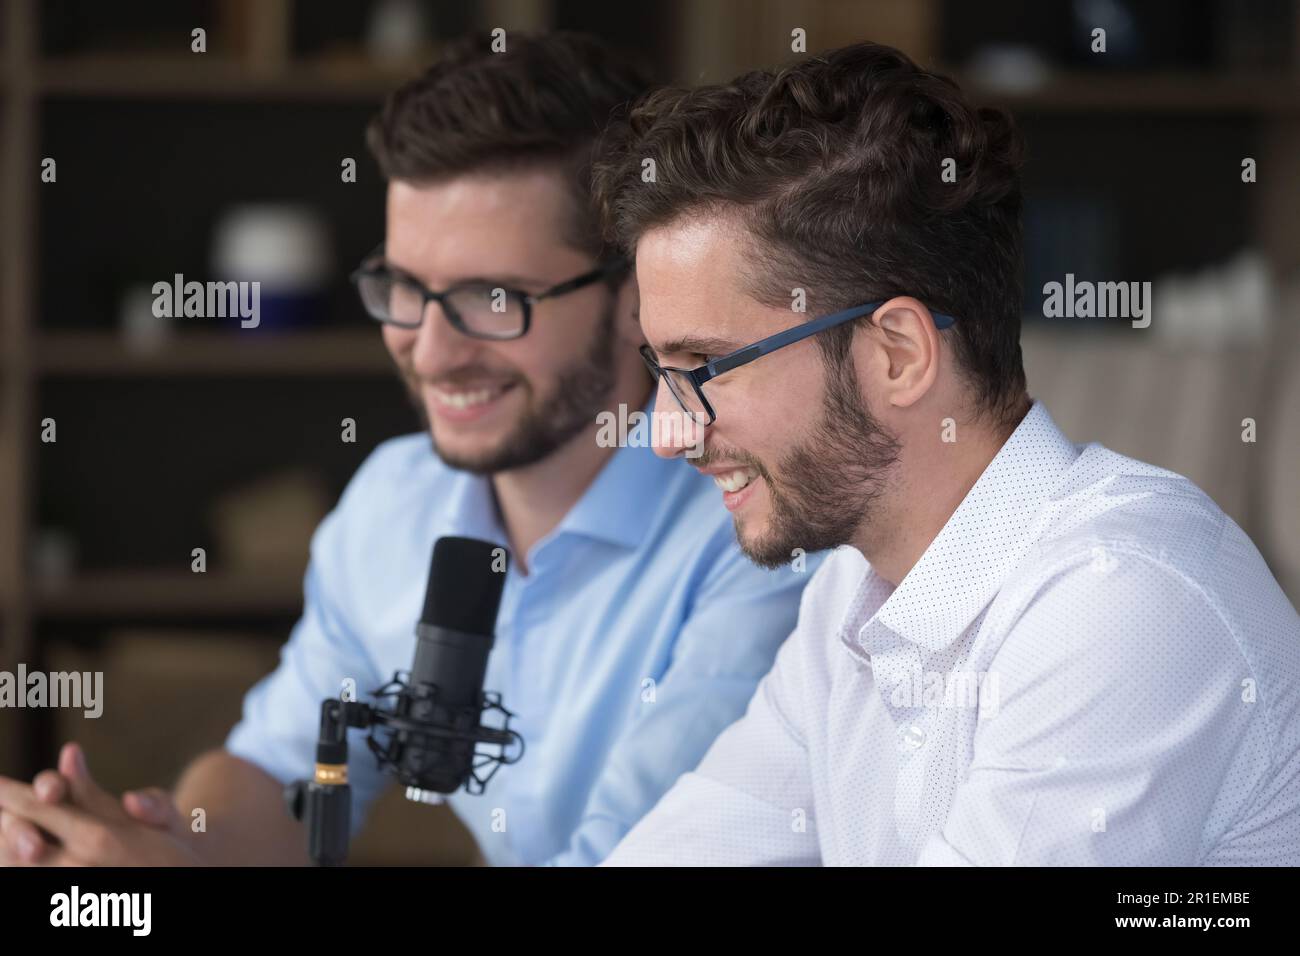 Glückliche, positive junge Erwachsene Zwillingsbrüder, die auf Sendung senden Stockfoto